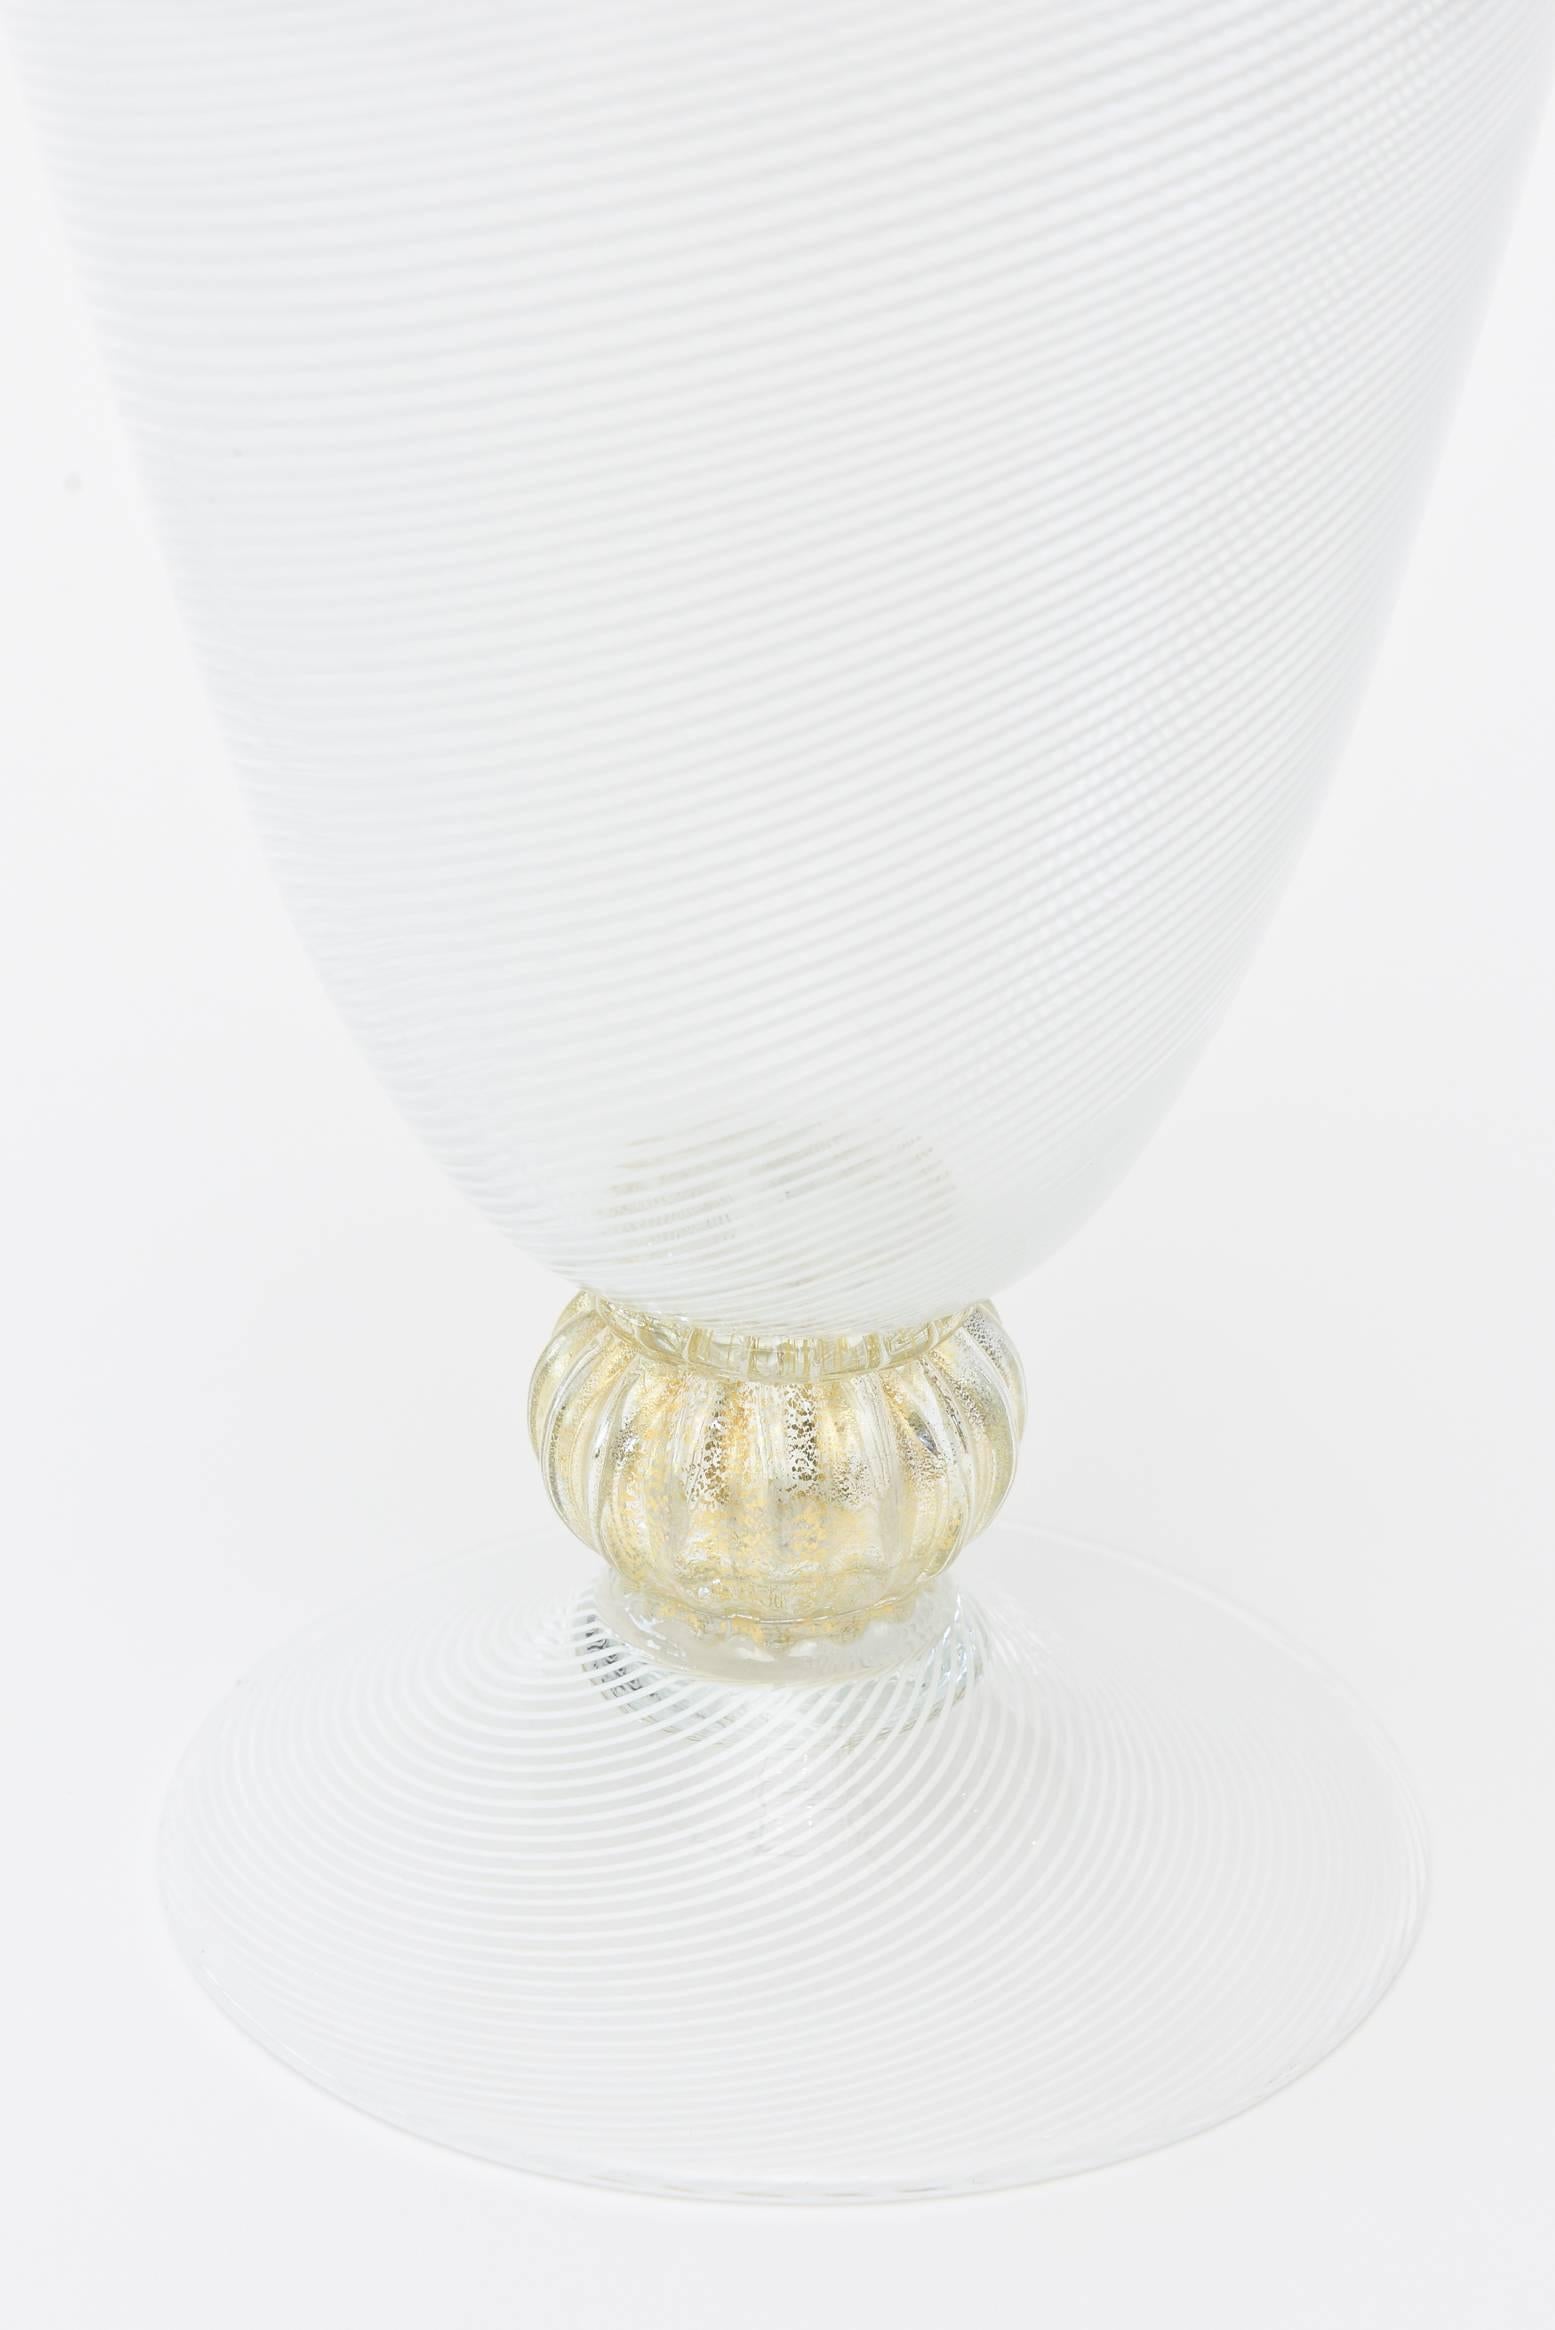 European Seguso Filigrana Murano Glass Decanter with Stopper Barware